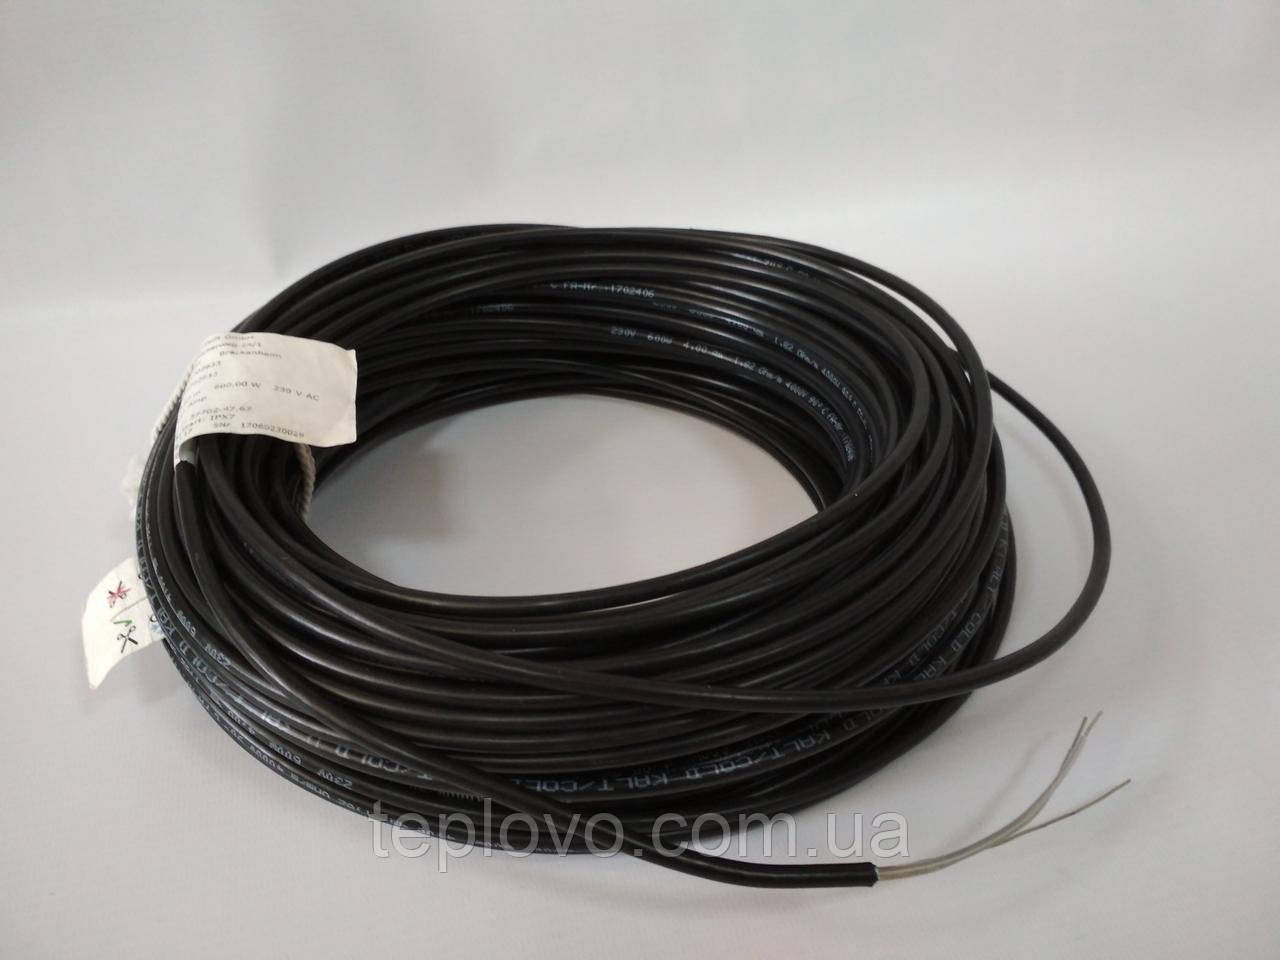 Двожильний нагрівальний кабель Hemstedt BR-IM 17, 1700 Вт (7.4 - 12.4 м2), тепла підлога